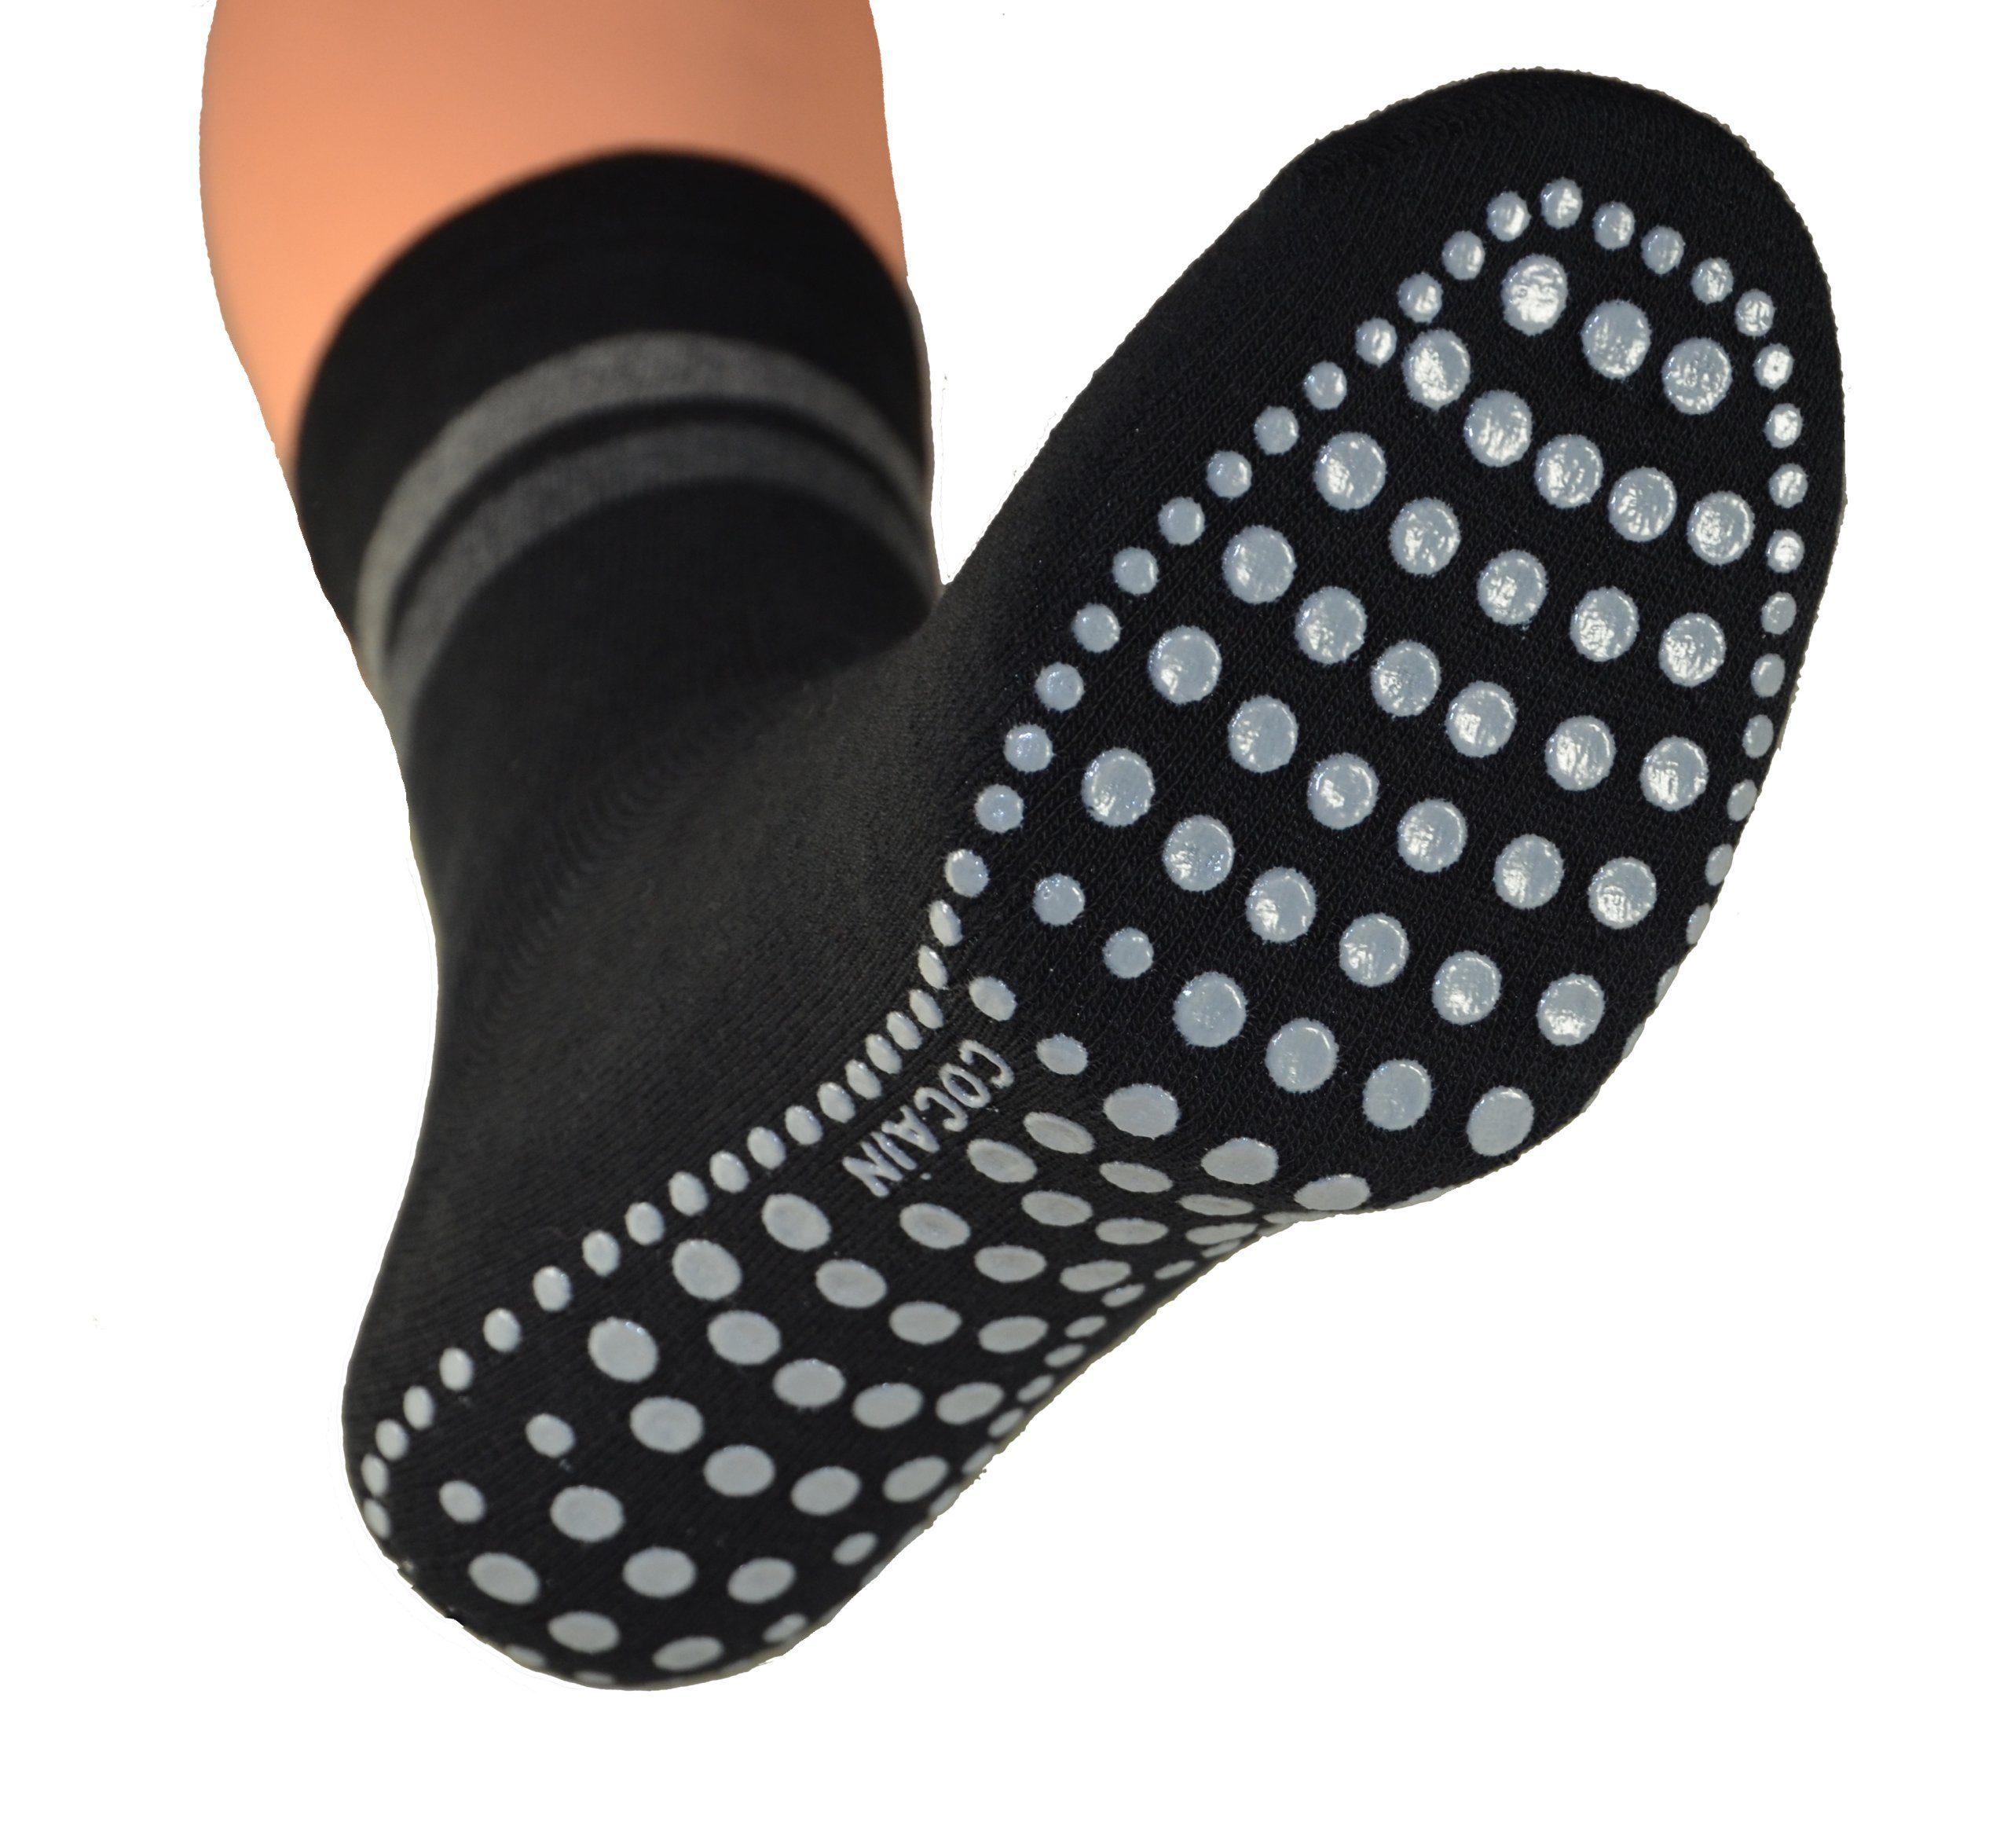 Übergröße Socken underwear Paar - Stoppersocken für ABS Cocain (2-Paar) & schwarz Herren in 2 auch Damen ABS-Socken